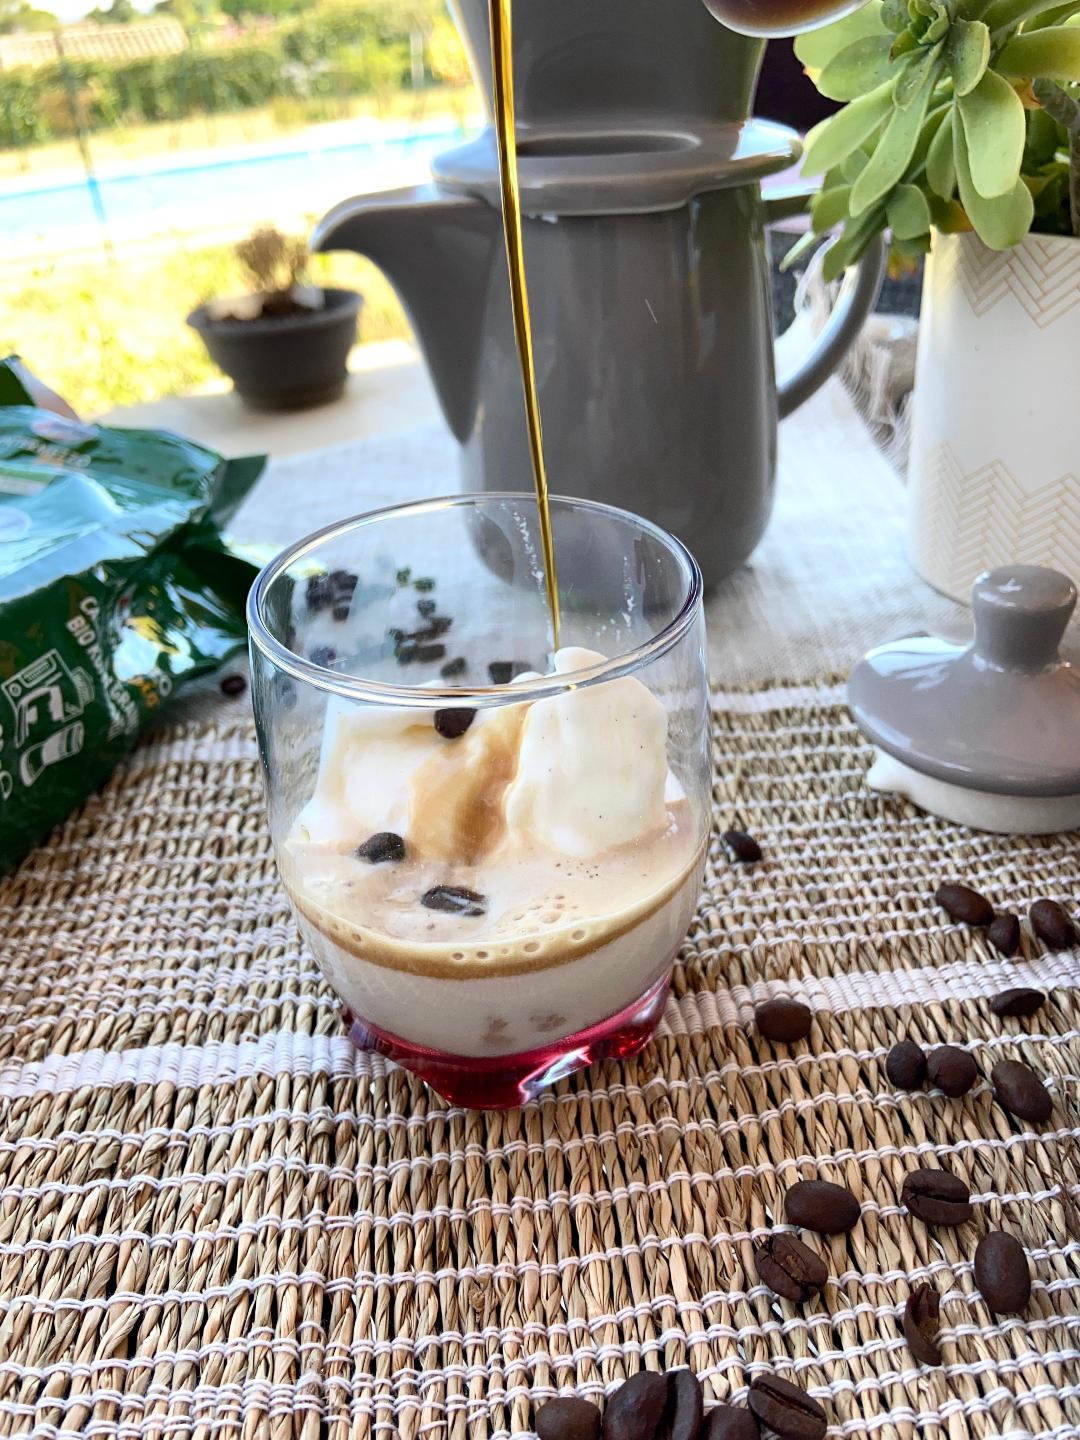 Recettes de boissons avec le café en grains bio Segafredo - HelloBeautyMag